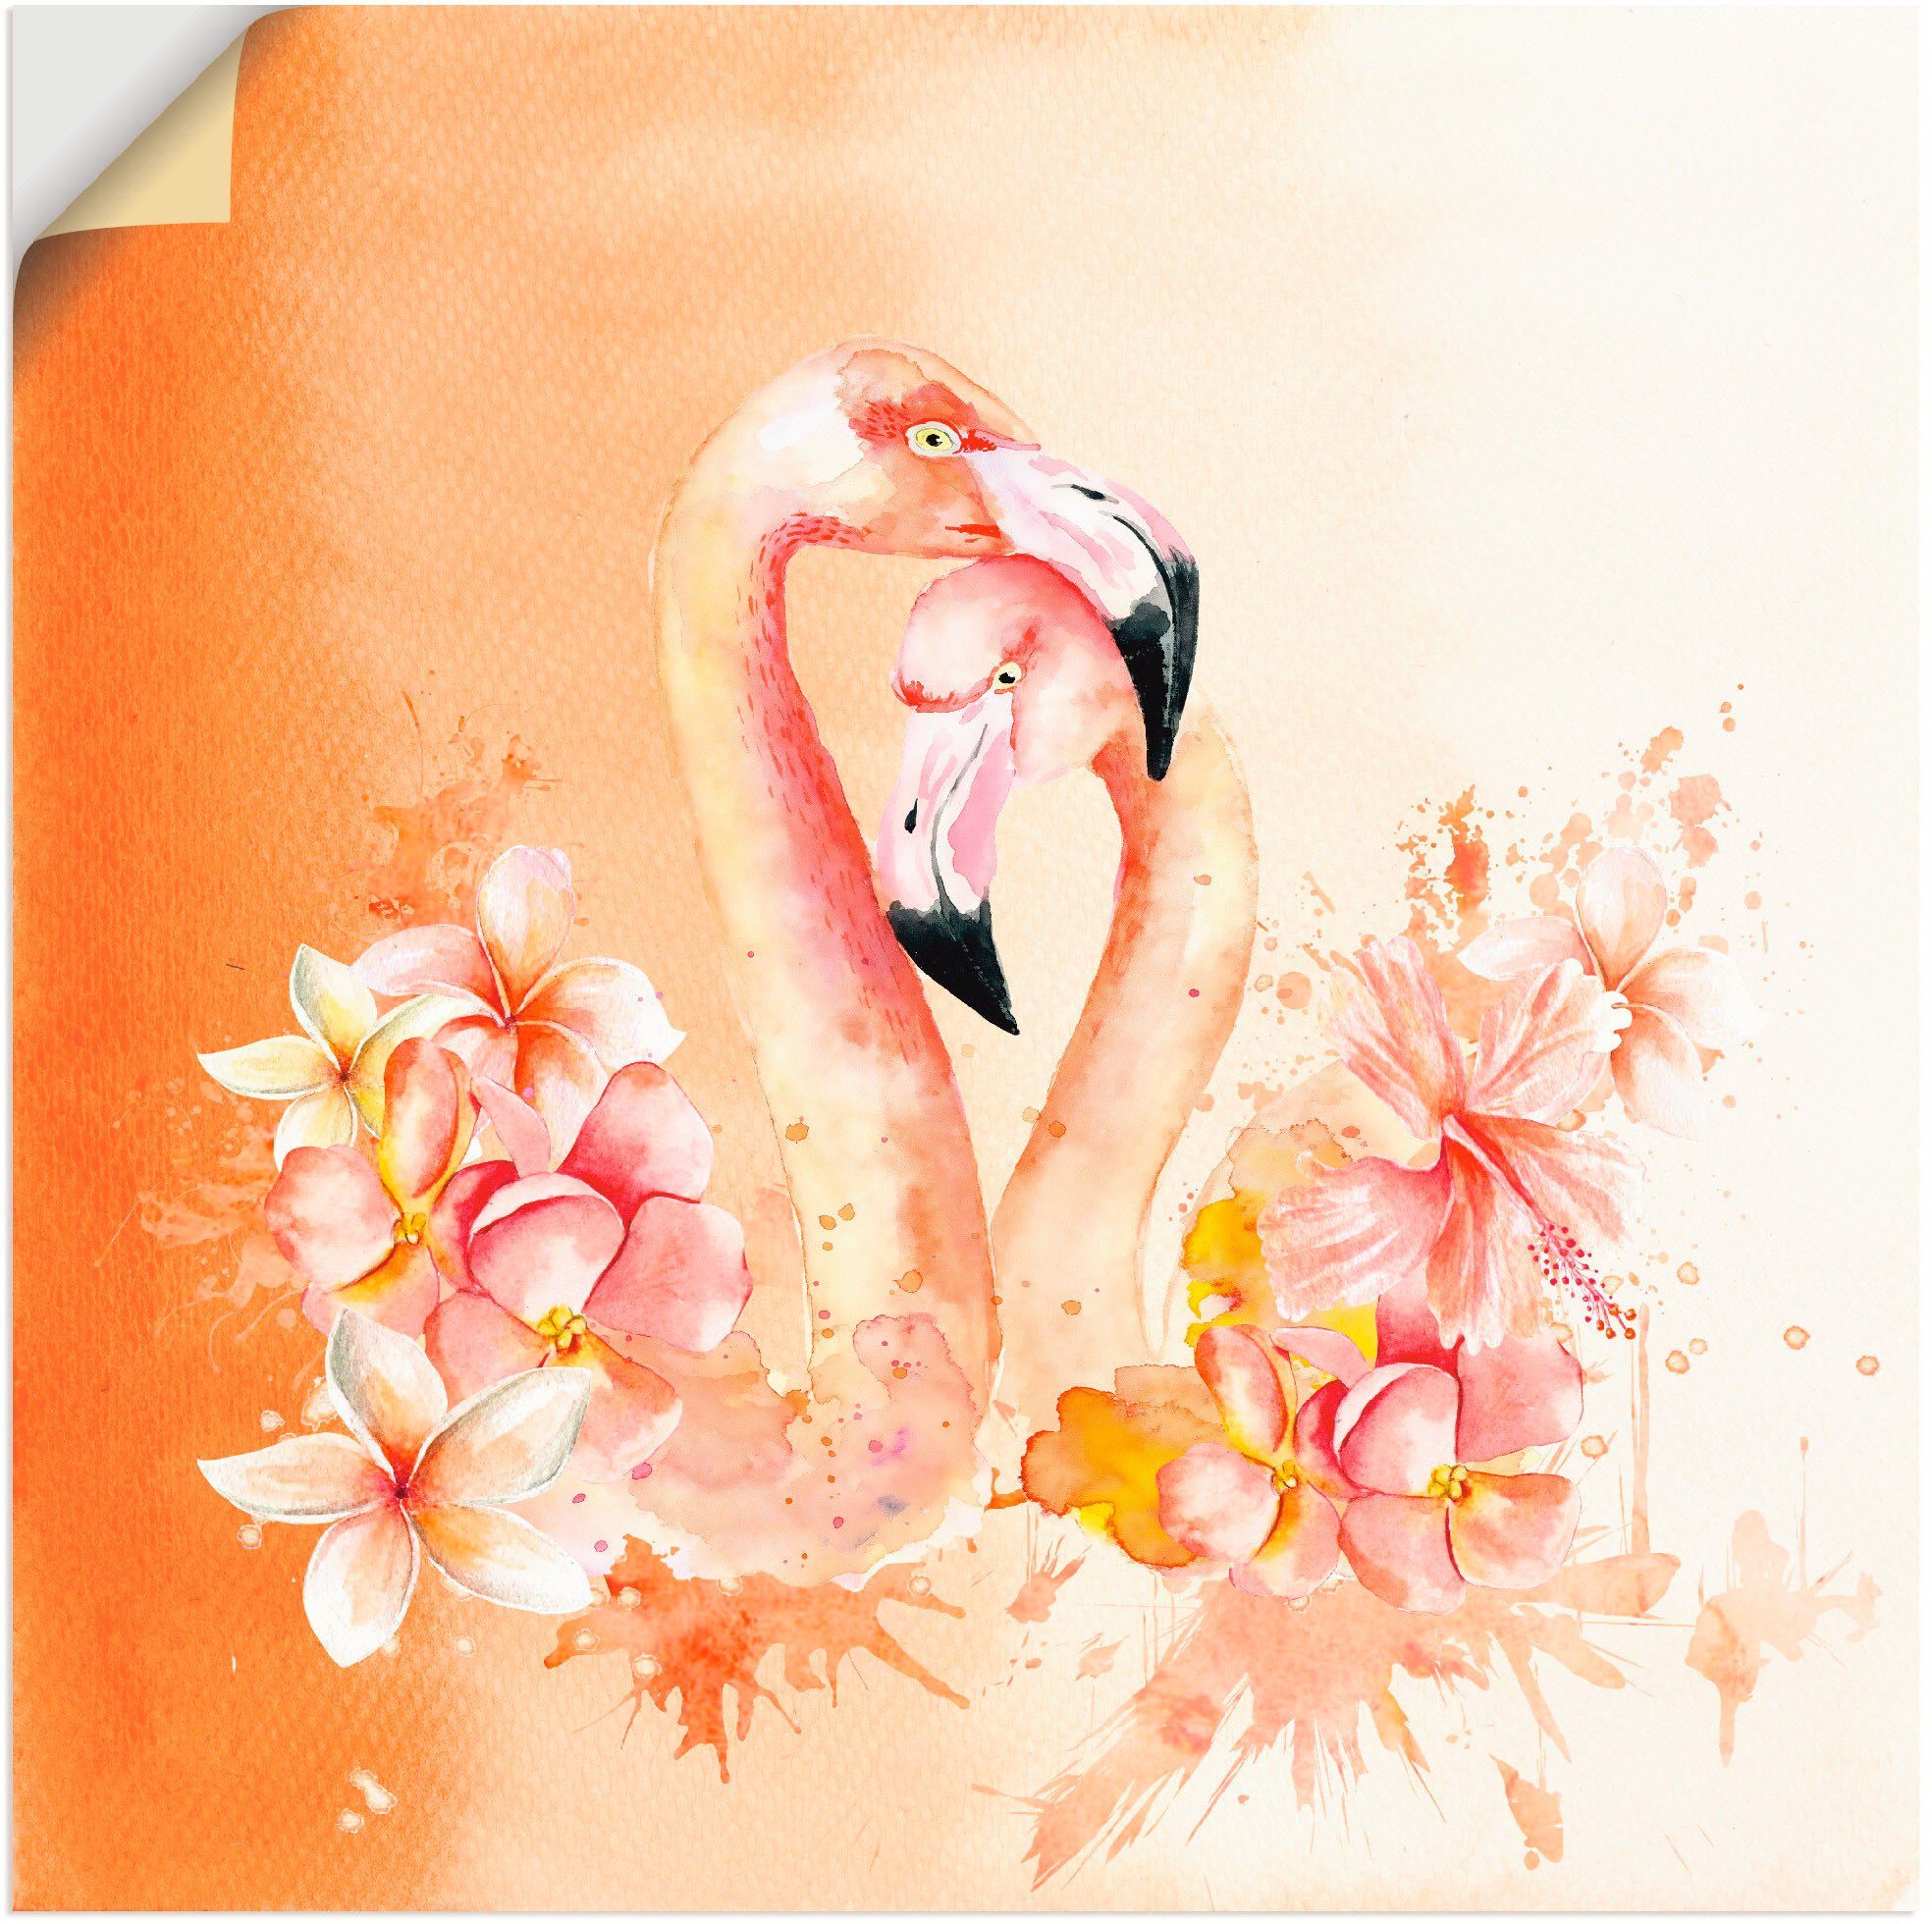 Artland Artprint Oranje flamingo In Love- illustratie in vele afmetingen & productsoorten - artprint van aluminium / artprint voor buiten, artprint op linnen, poster, muursticker /